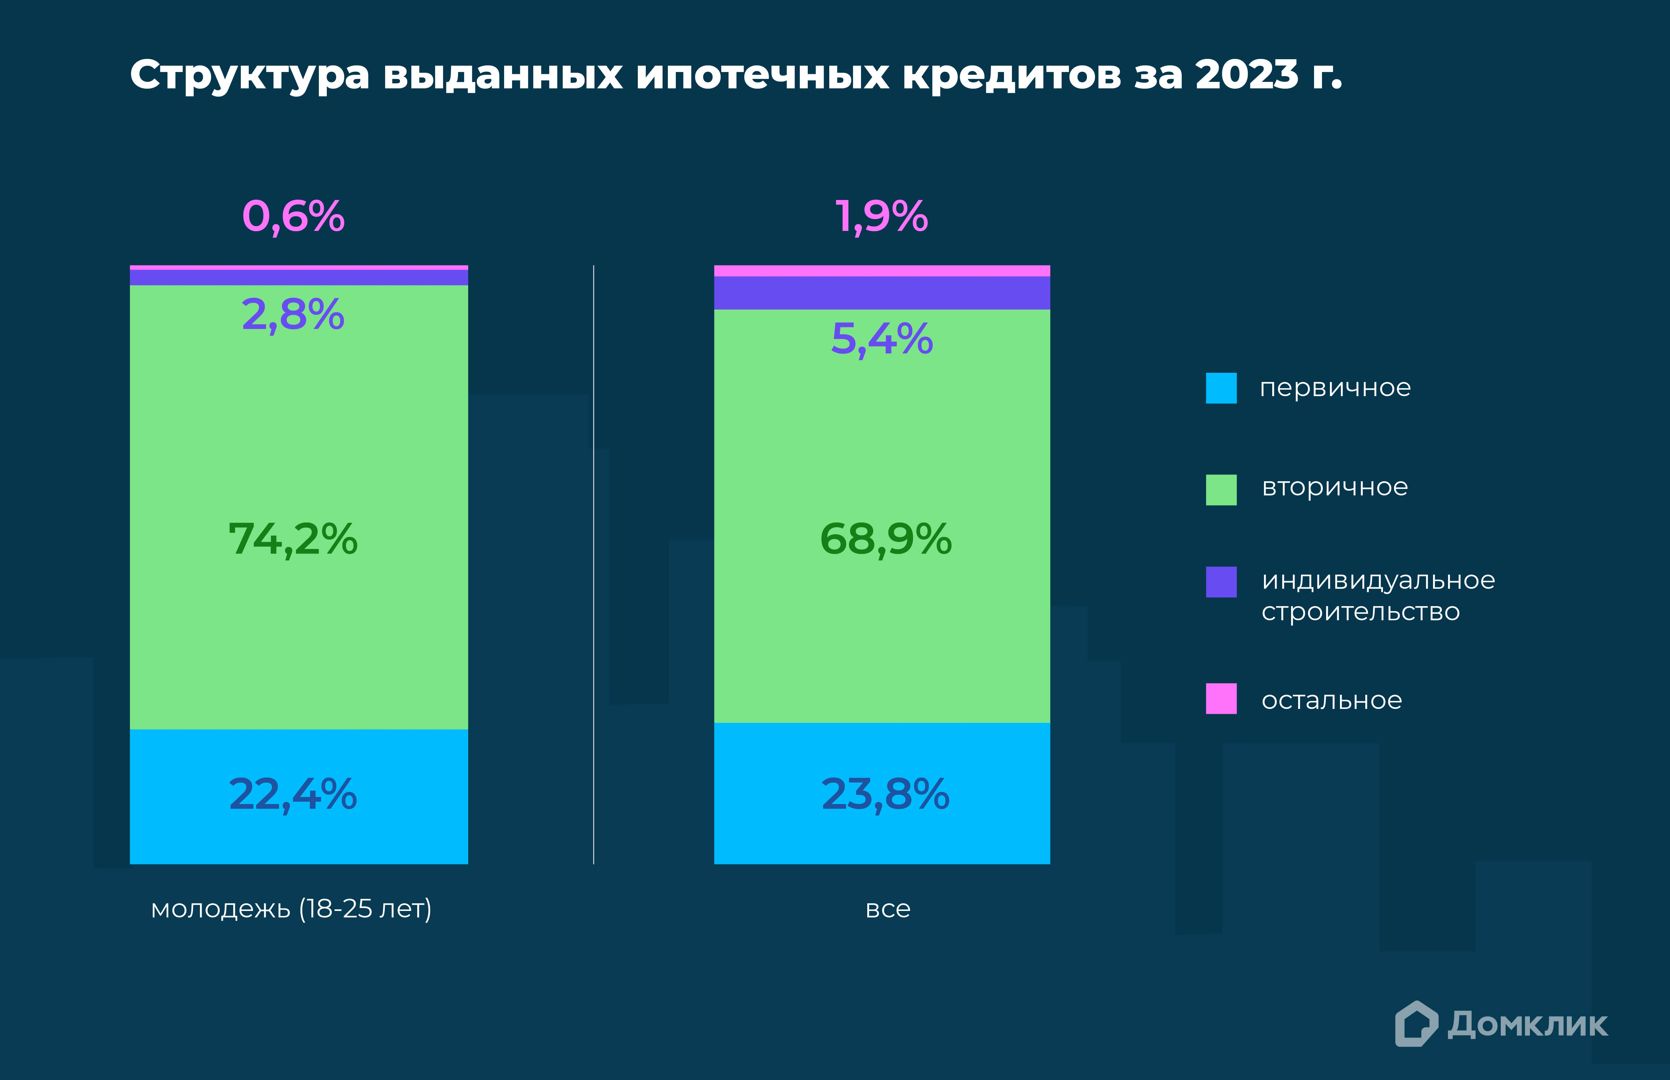 Распределение ипотеки по типам кредитов на жильё среди молодежи (18-25 лет) и всего российского населения в 2023 году.